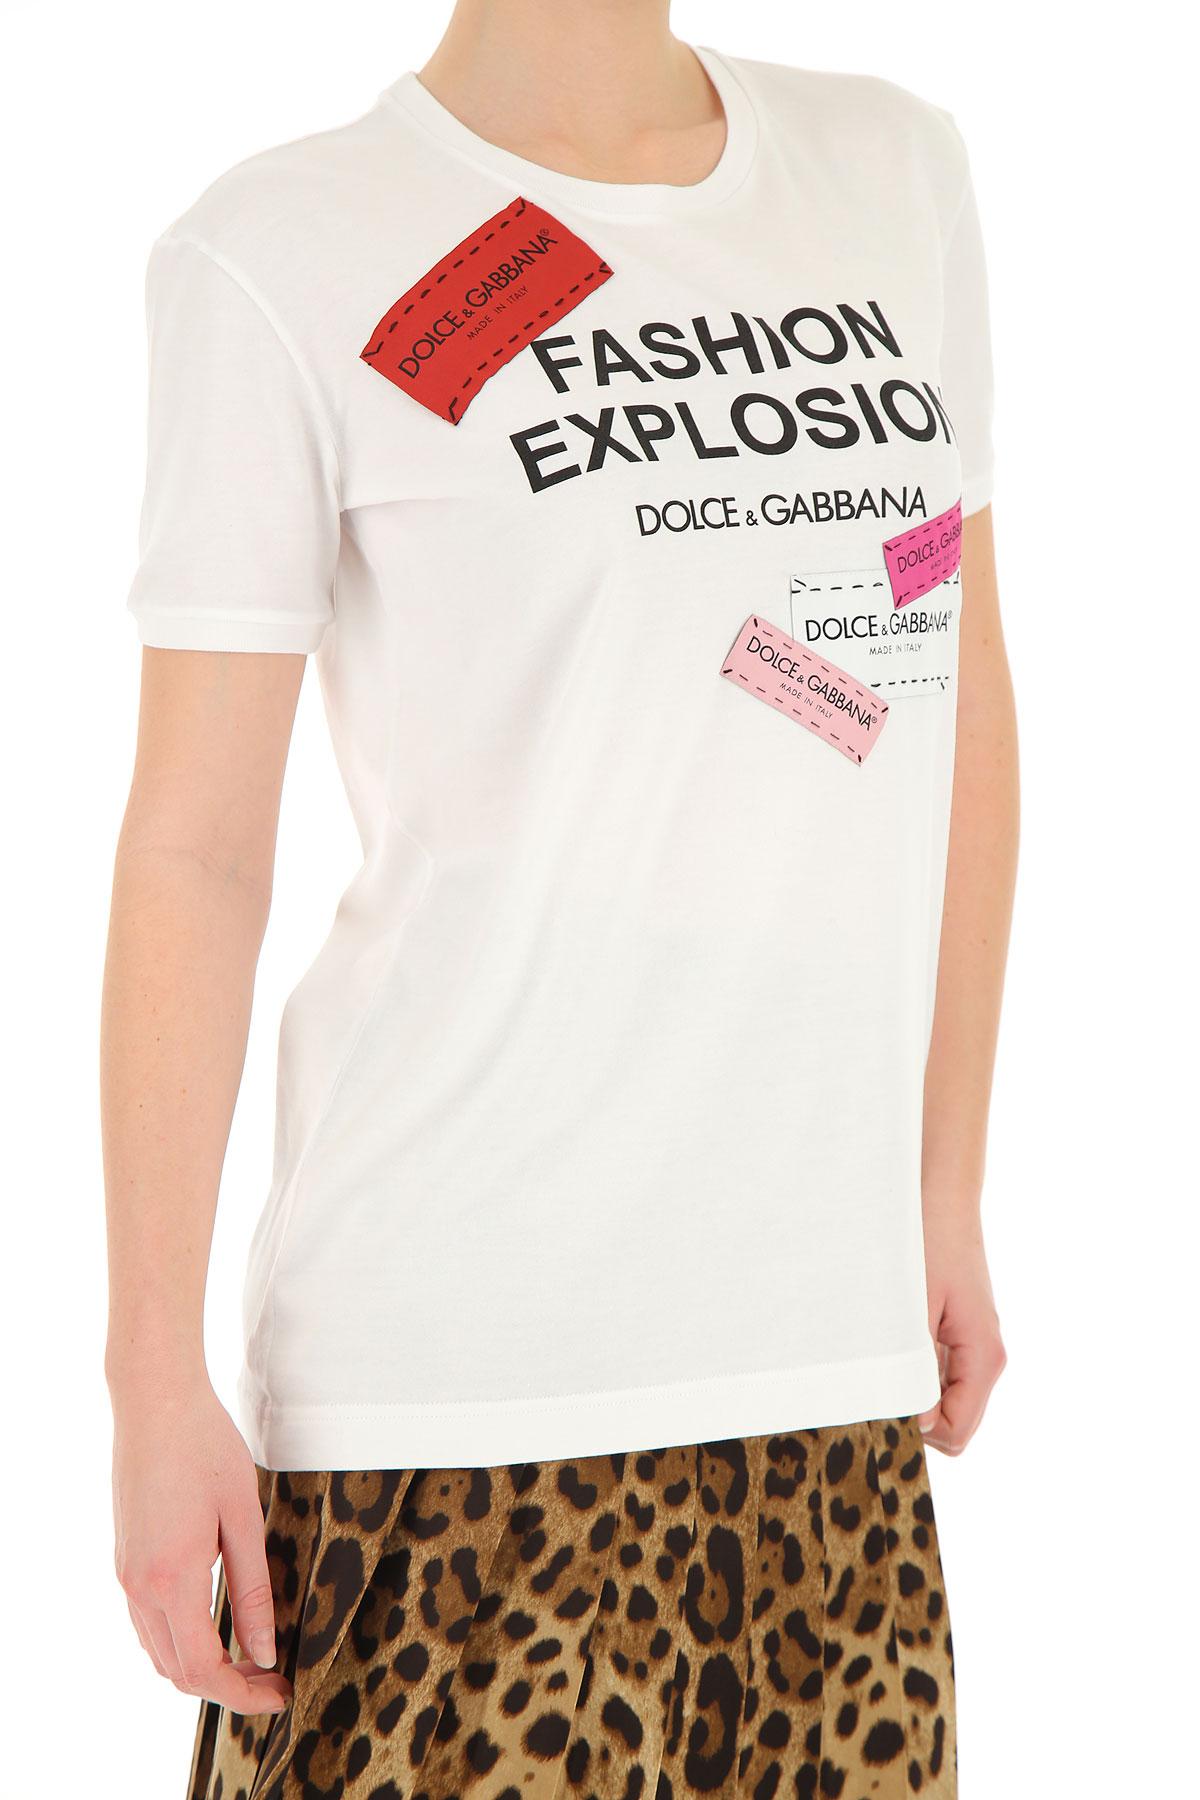 dolce gabbana women's t shirt sale